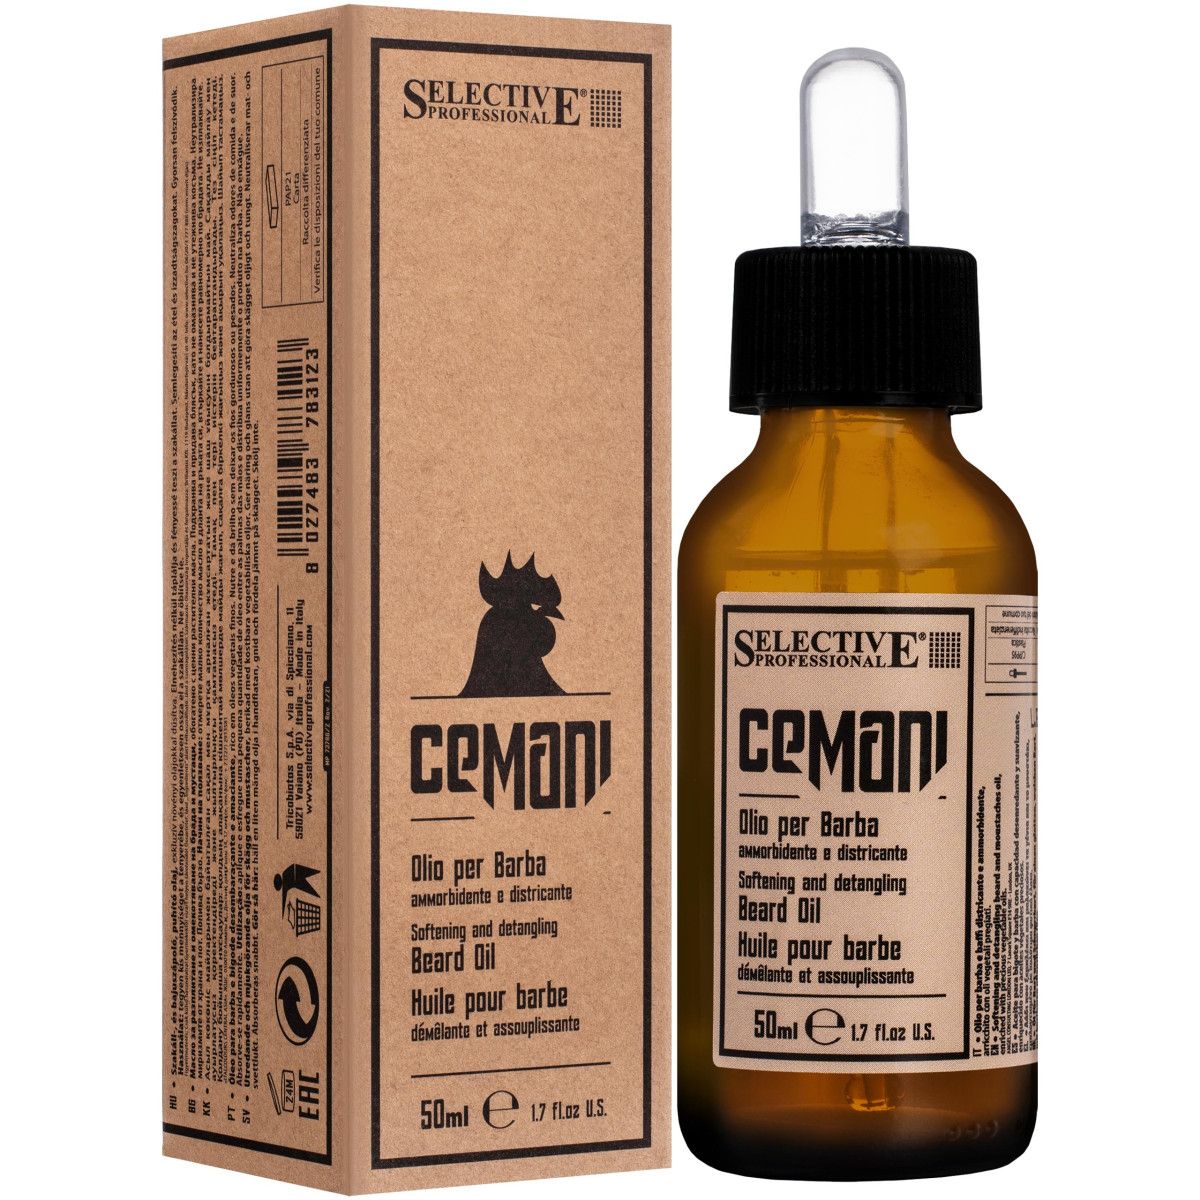 Selective Cemani Beard Oil - olejek do pielęgnacji zarostu i skóry twarzy, 50ml